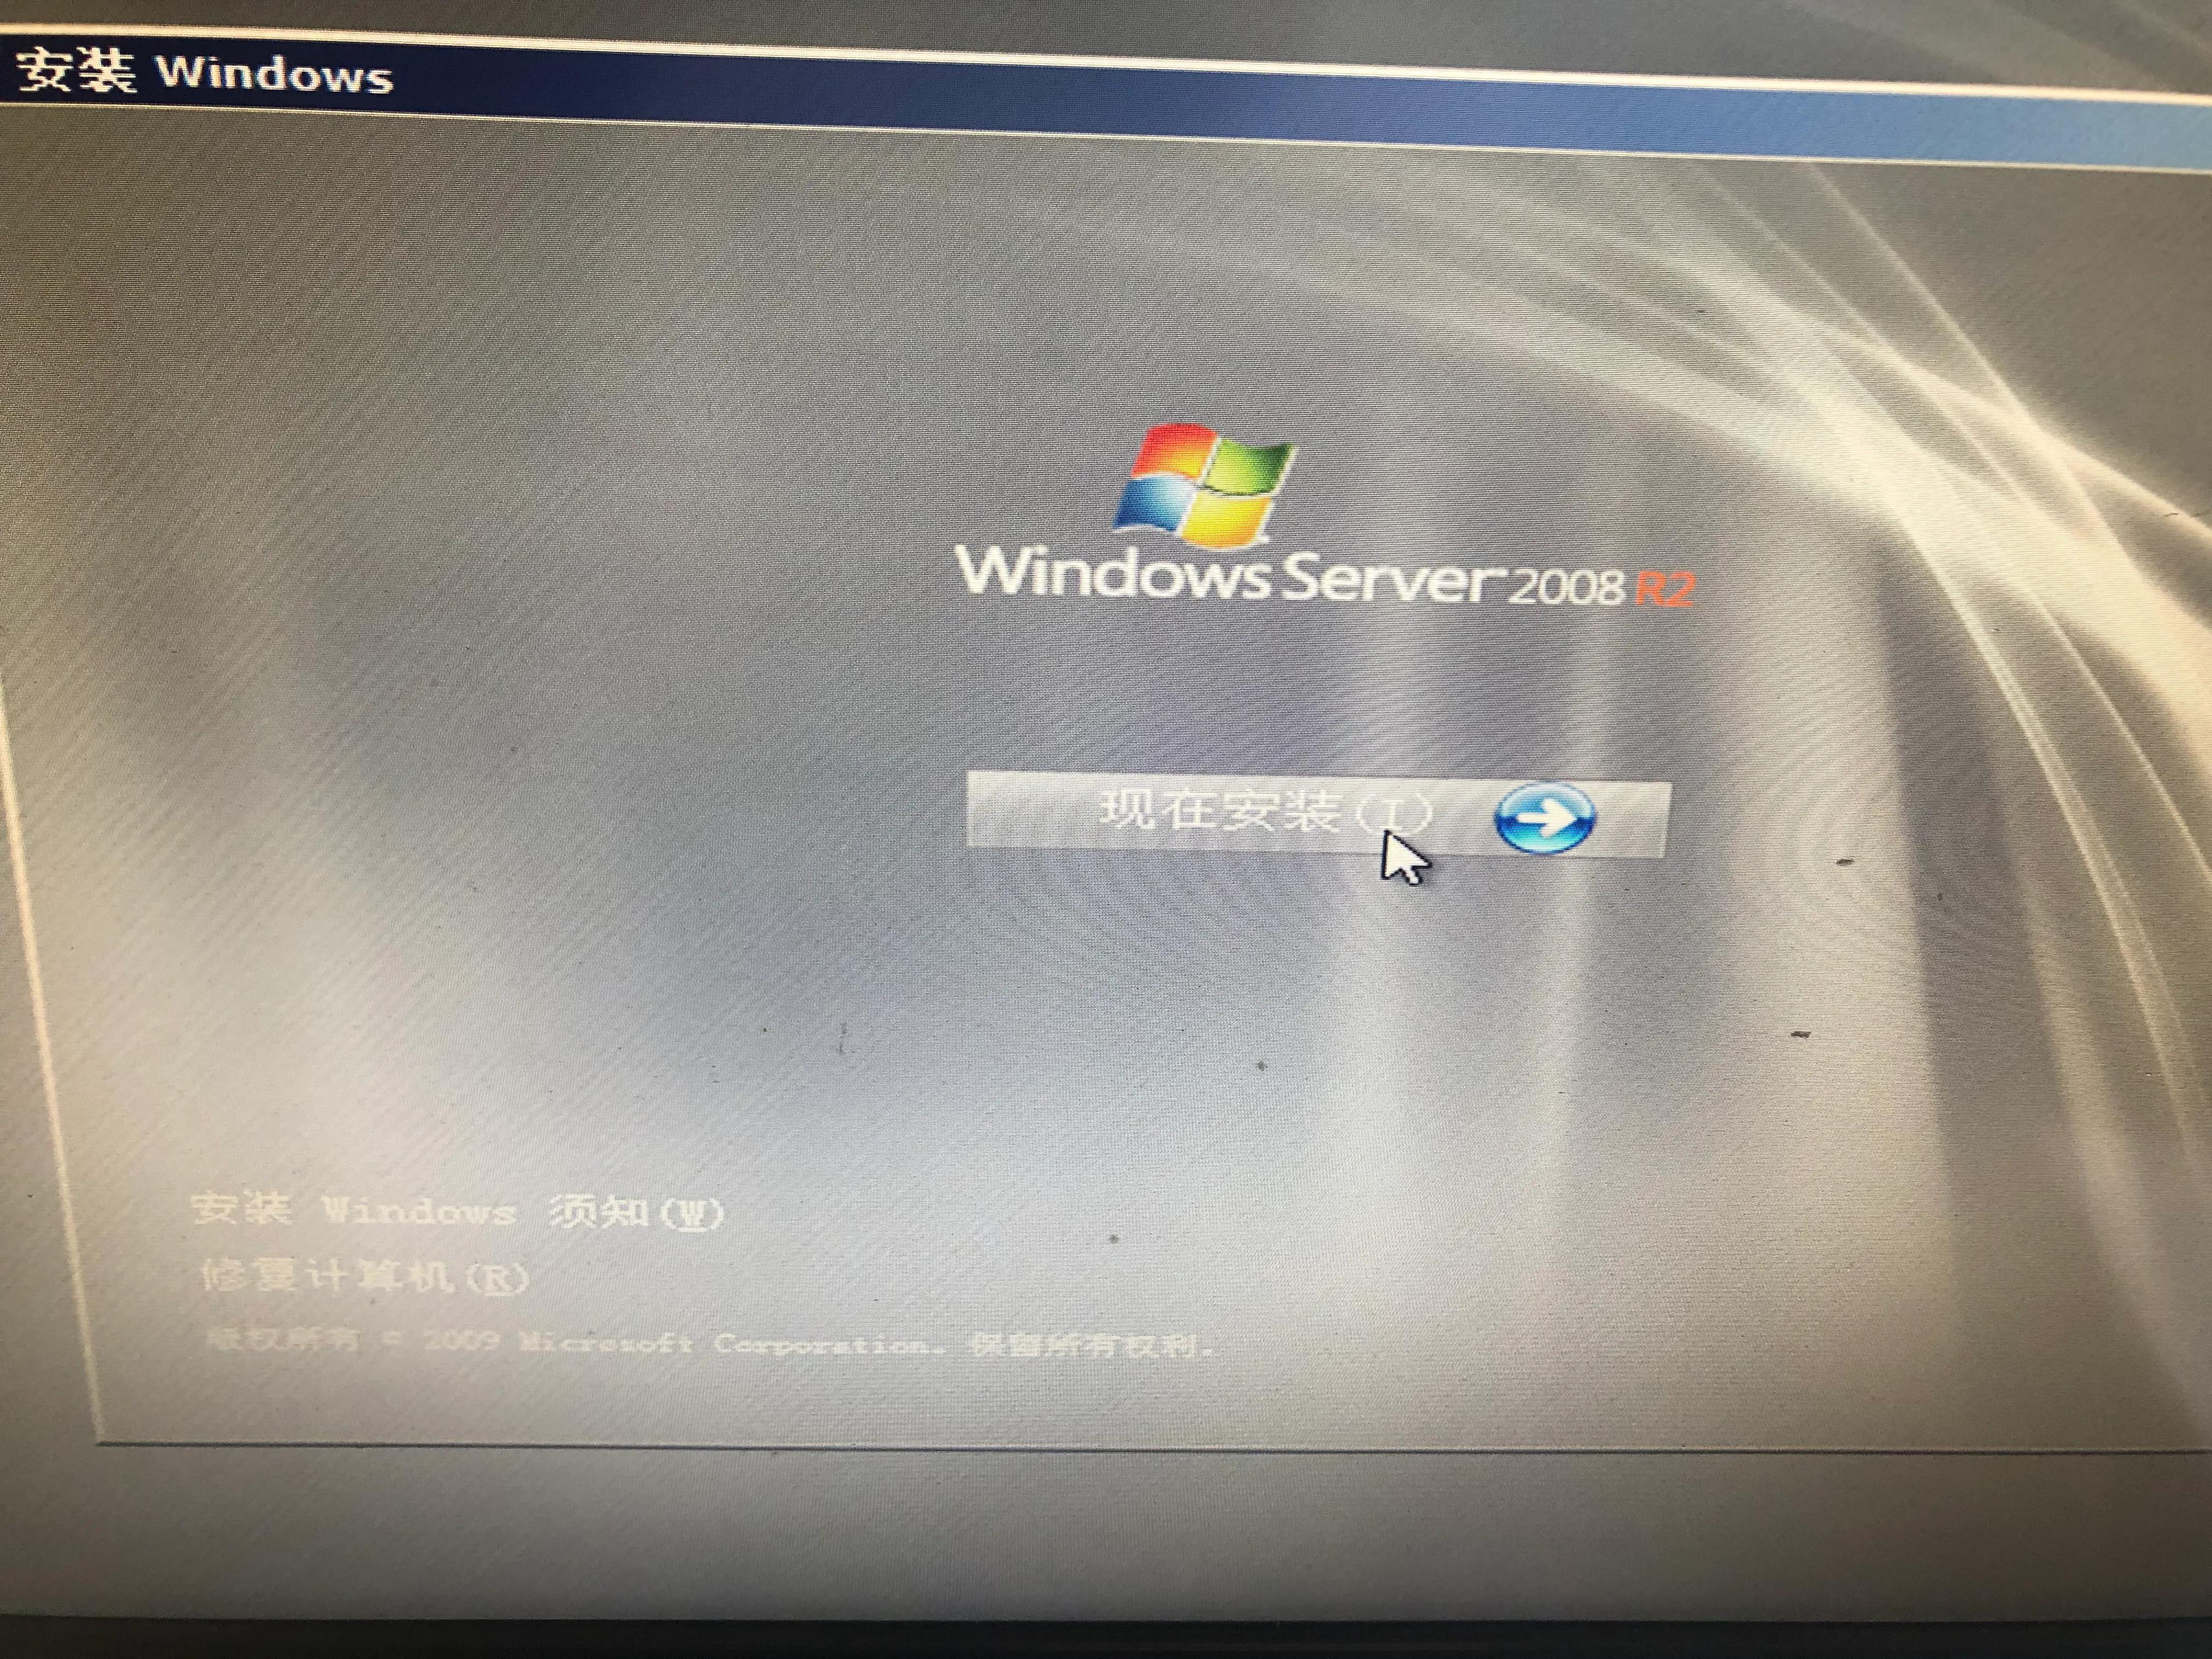 老旧电脑完整安装windows server 2008 r2,搭建局域网windows服务器